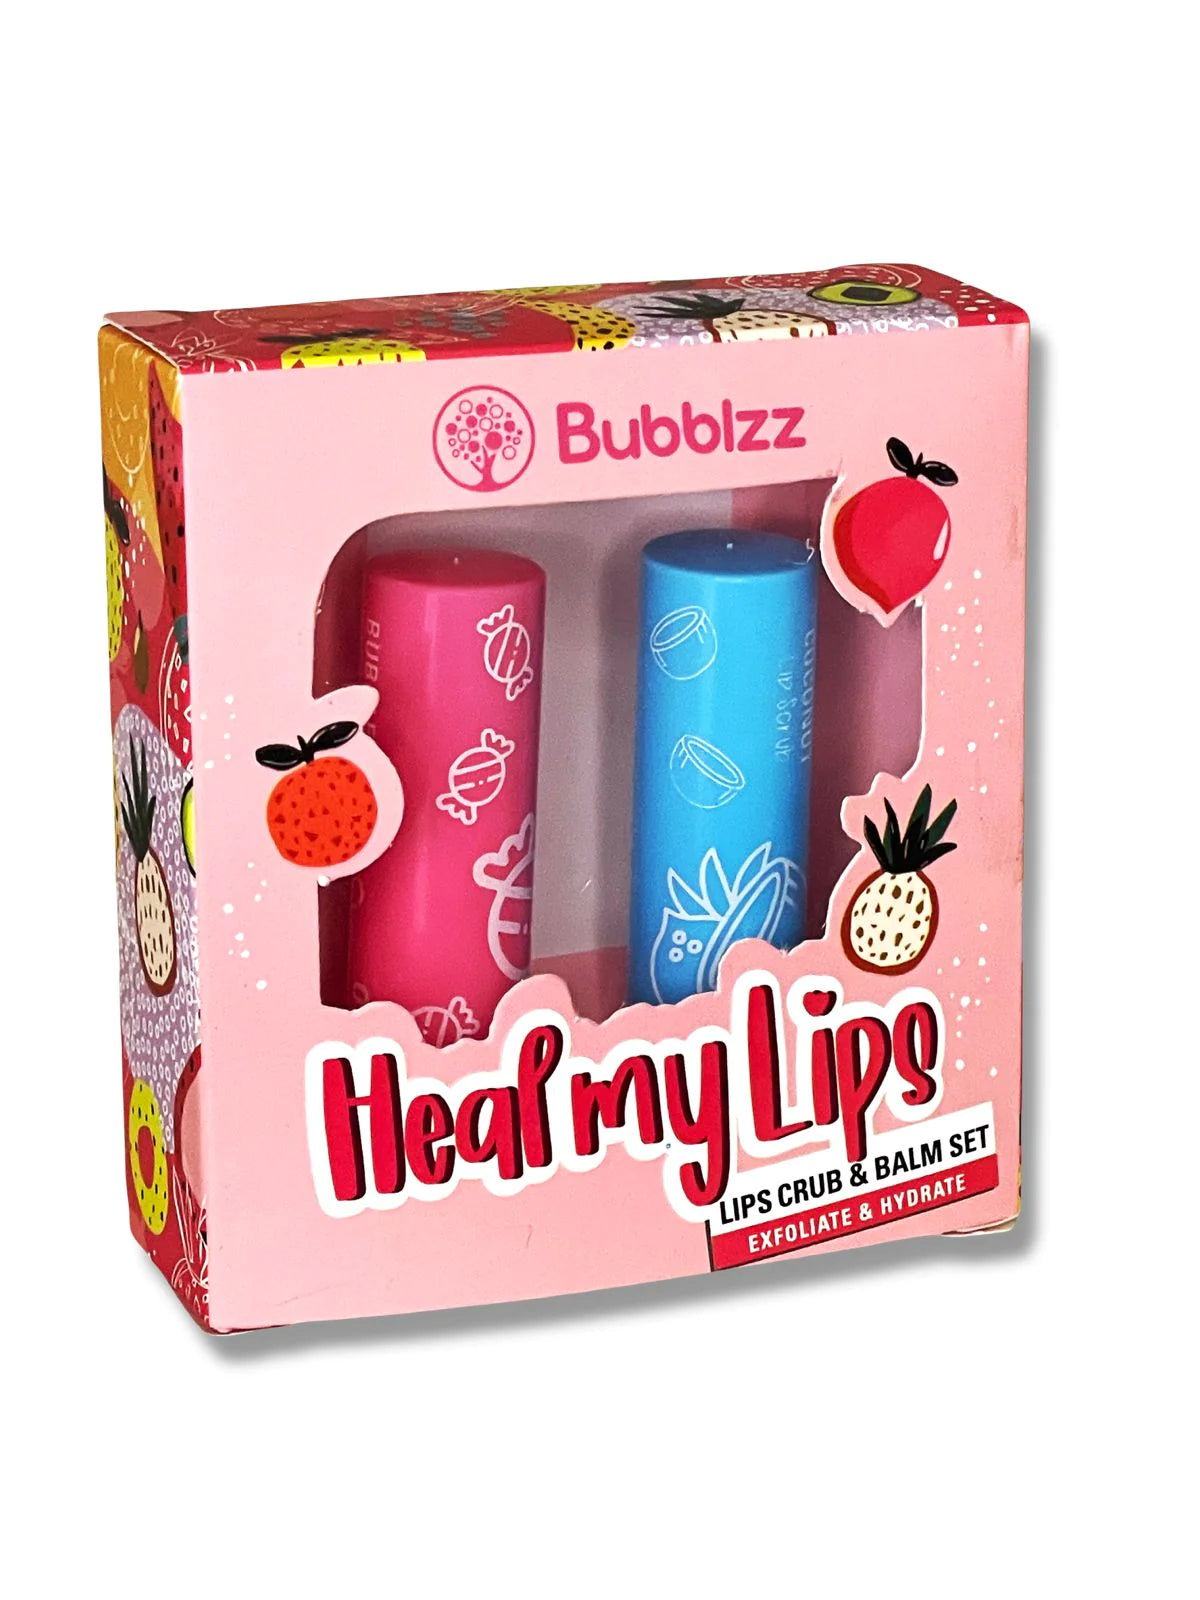 
                  
                    Bubblzz-Heal My Lips Kit
                  
                